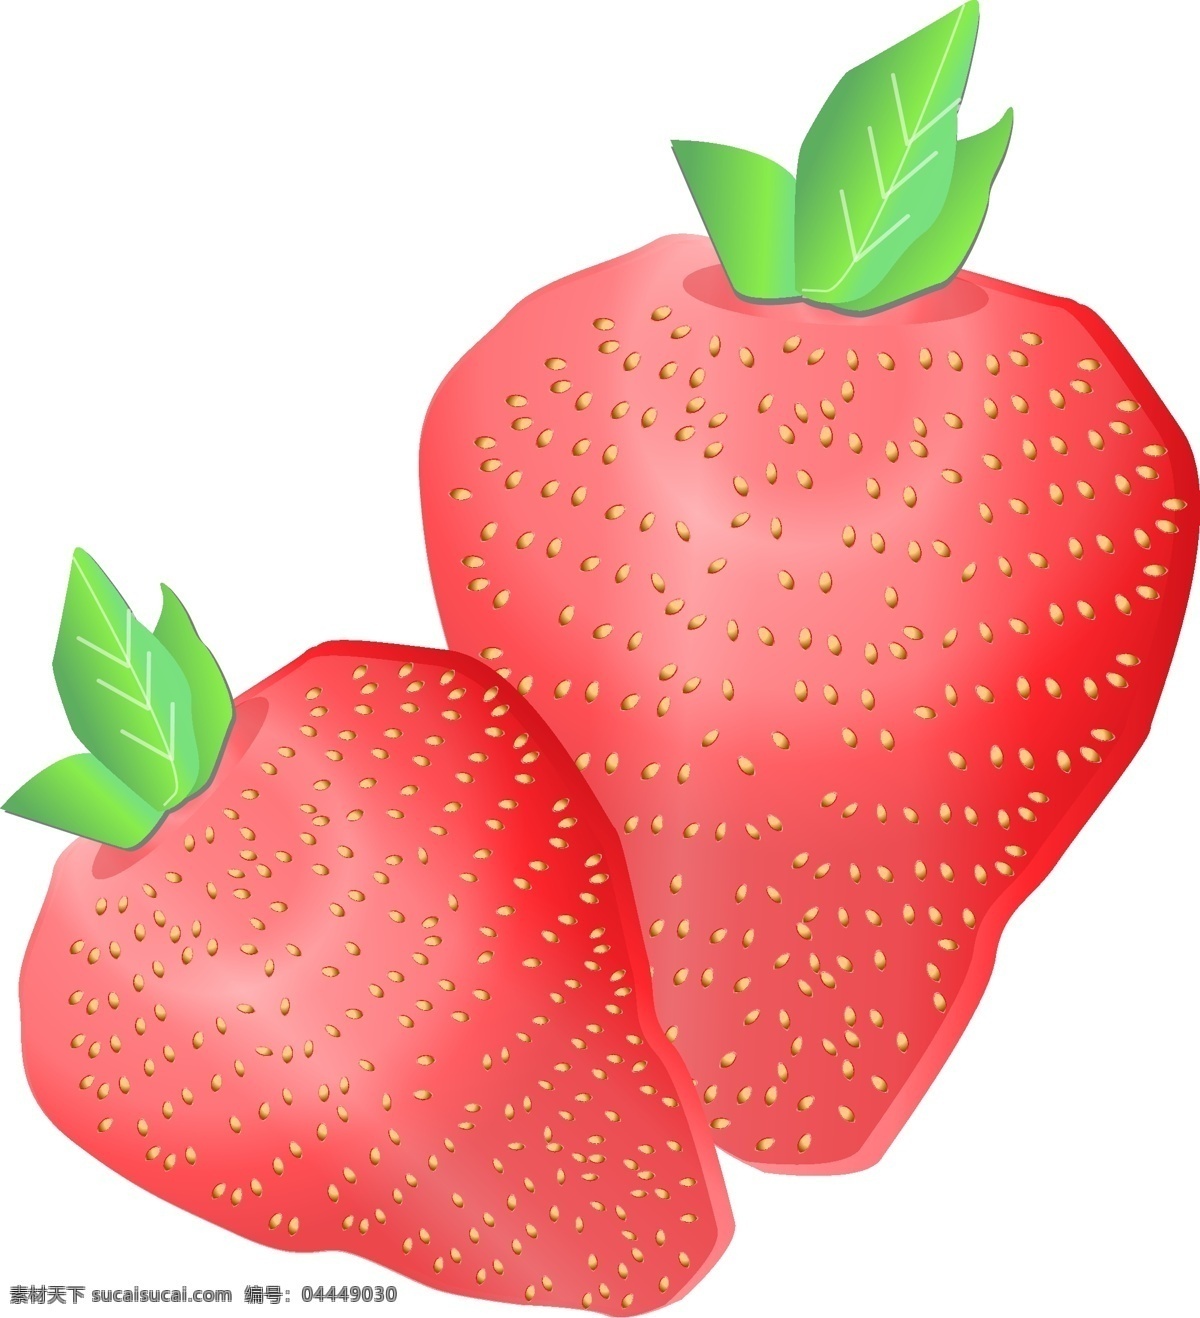 新鲜 红色 草莓 插画 新鲜草莓 水果草莓 绿色的叶子 卡通草莓 漂亮的草莓 手绘草莓 草莓装饰